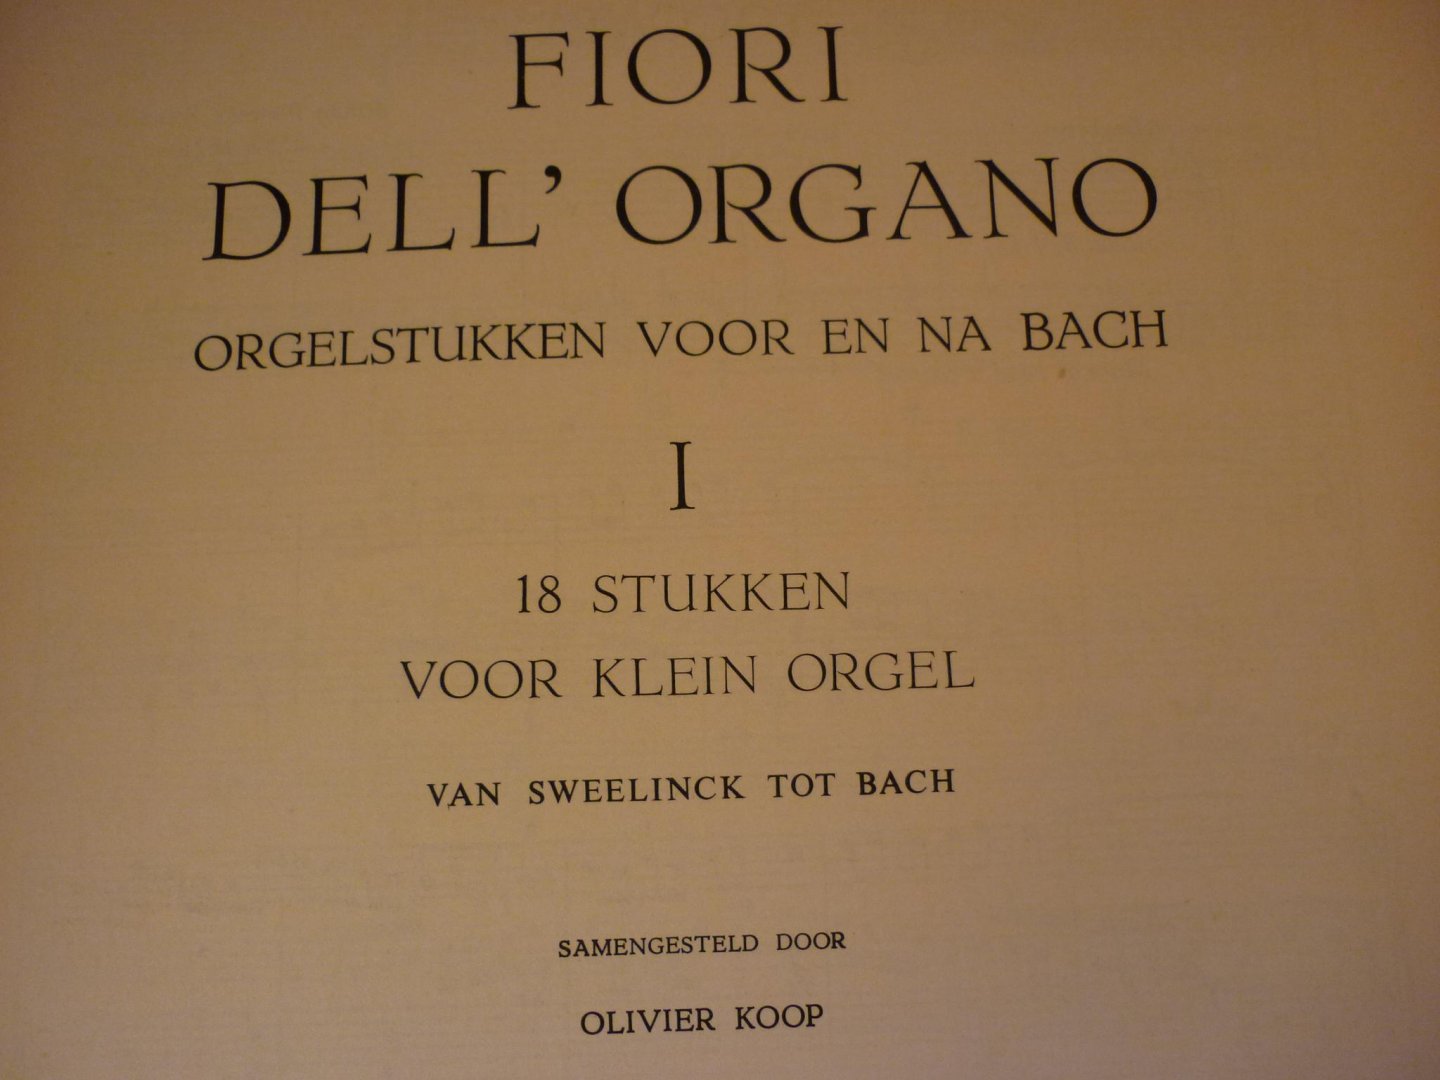 Diverse componisten - Fiori Dell' Organo; Orgelstukken voor en na Bach - I; 18 stukken voor klein orgel; van Sweelinck tot Bach